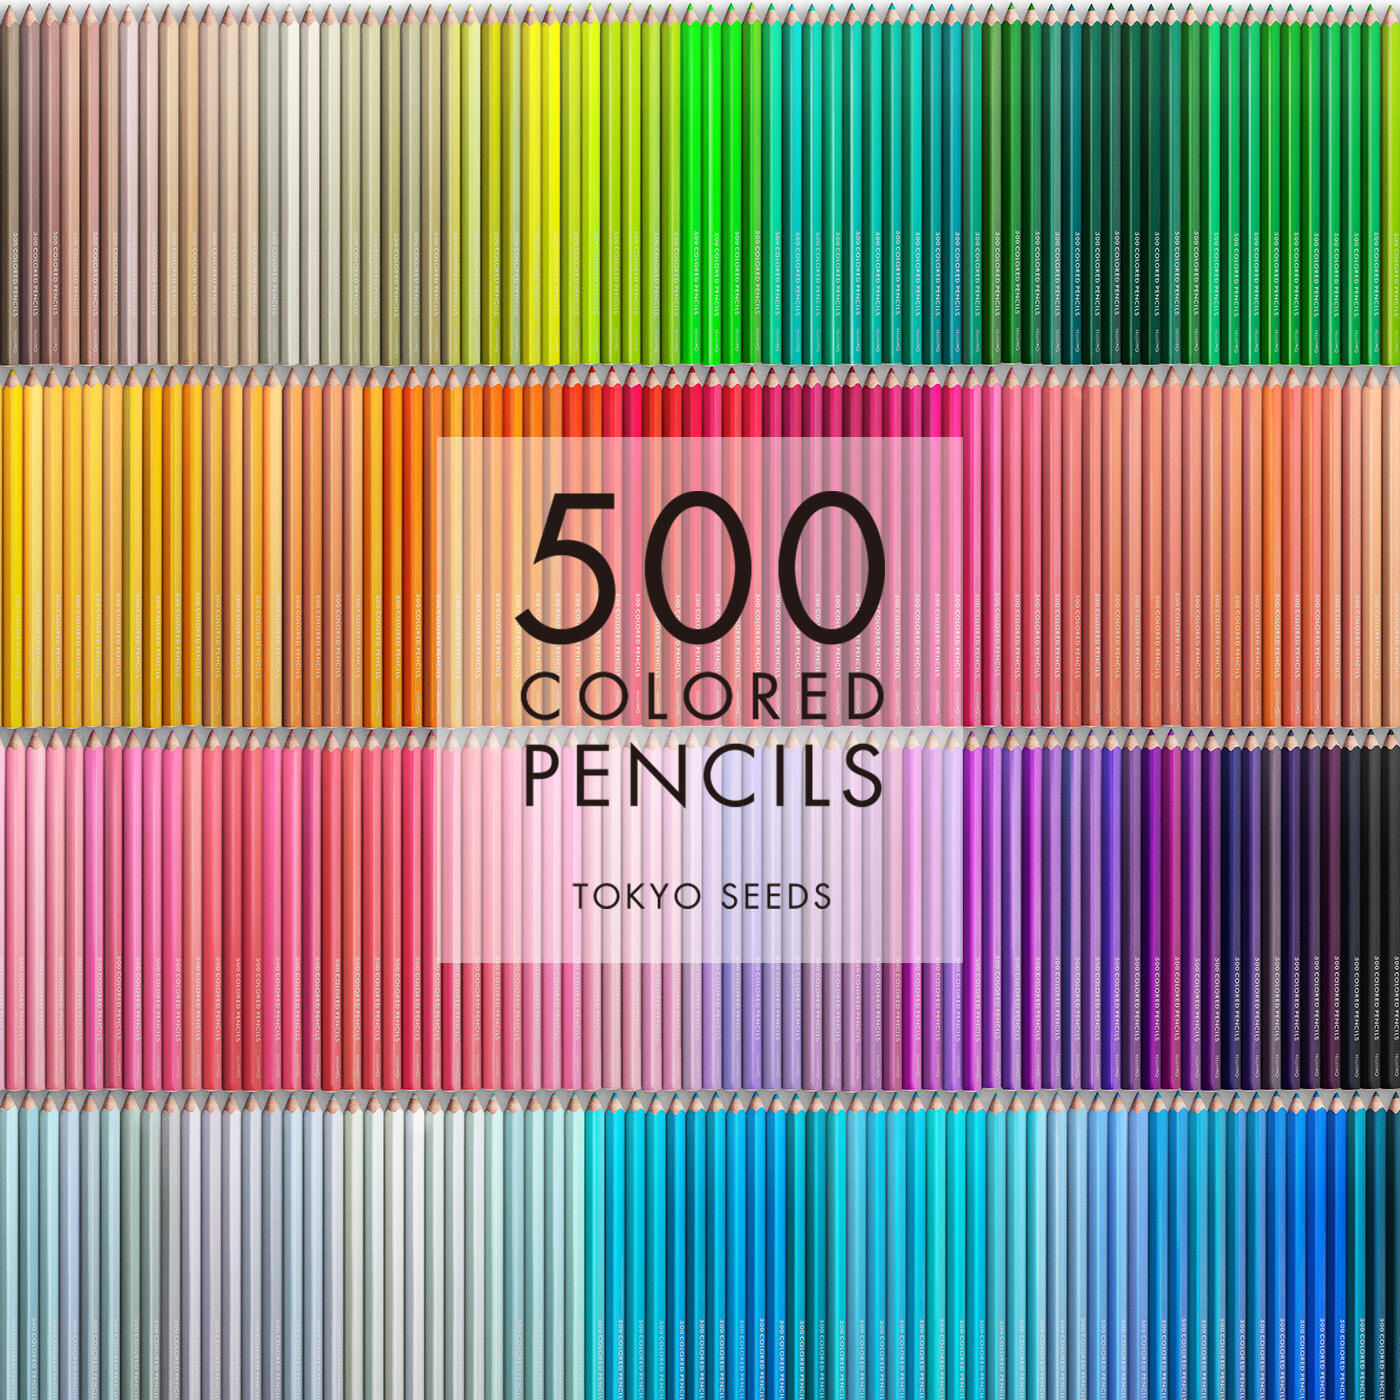 Real Stock|【81/500 BIG APPLE】500色の色えんぴつ TOKYO SEEDS|1992年、世界初の「500色」という膨大な色数の色えんぴつが誕生して以来、その販売数は発売当初から合わせると、世界55ヵ国10万セット以上。今回、メイド・イン・ジャパンにこだわり、すべてが新しく生まれ変わって登場しました。